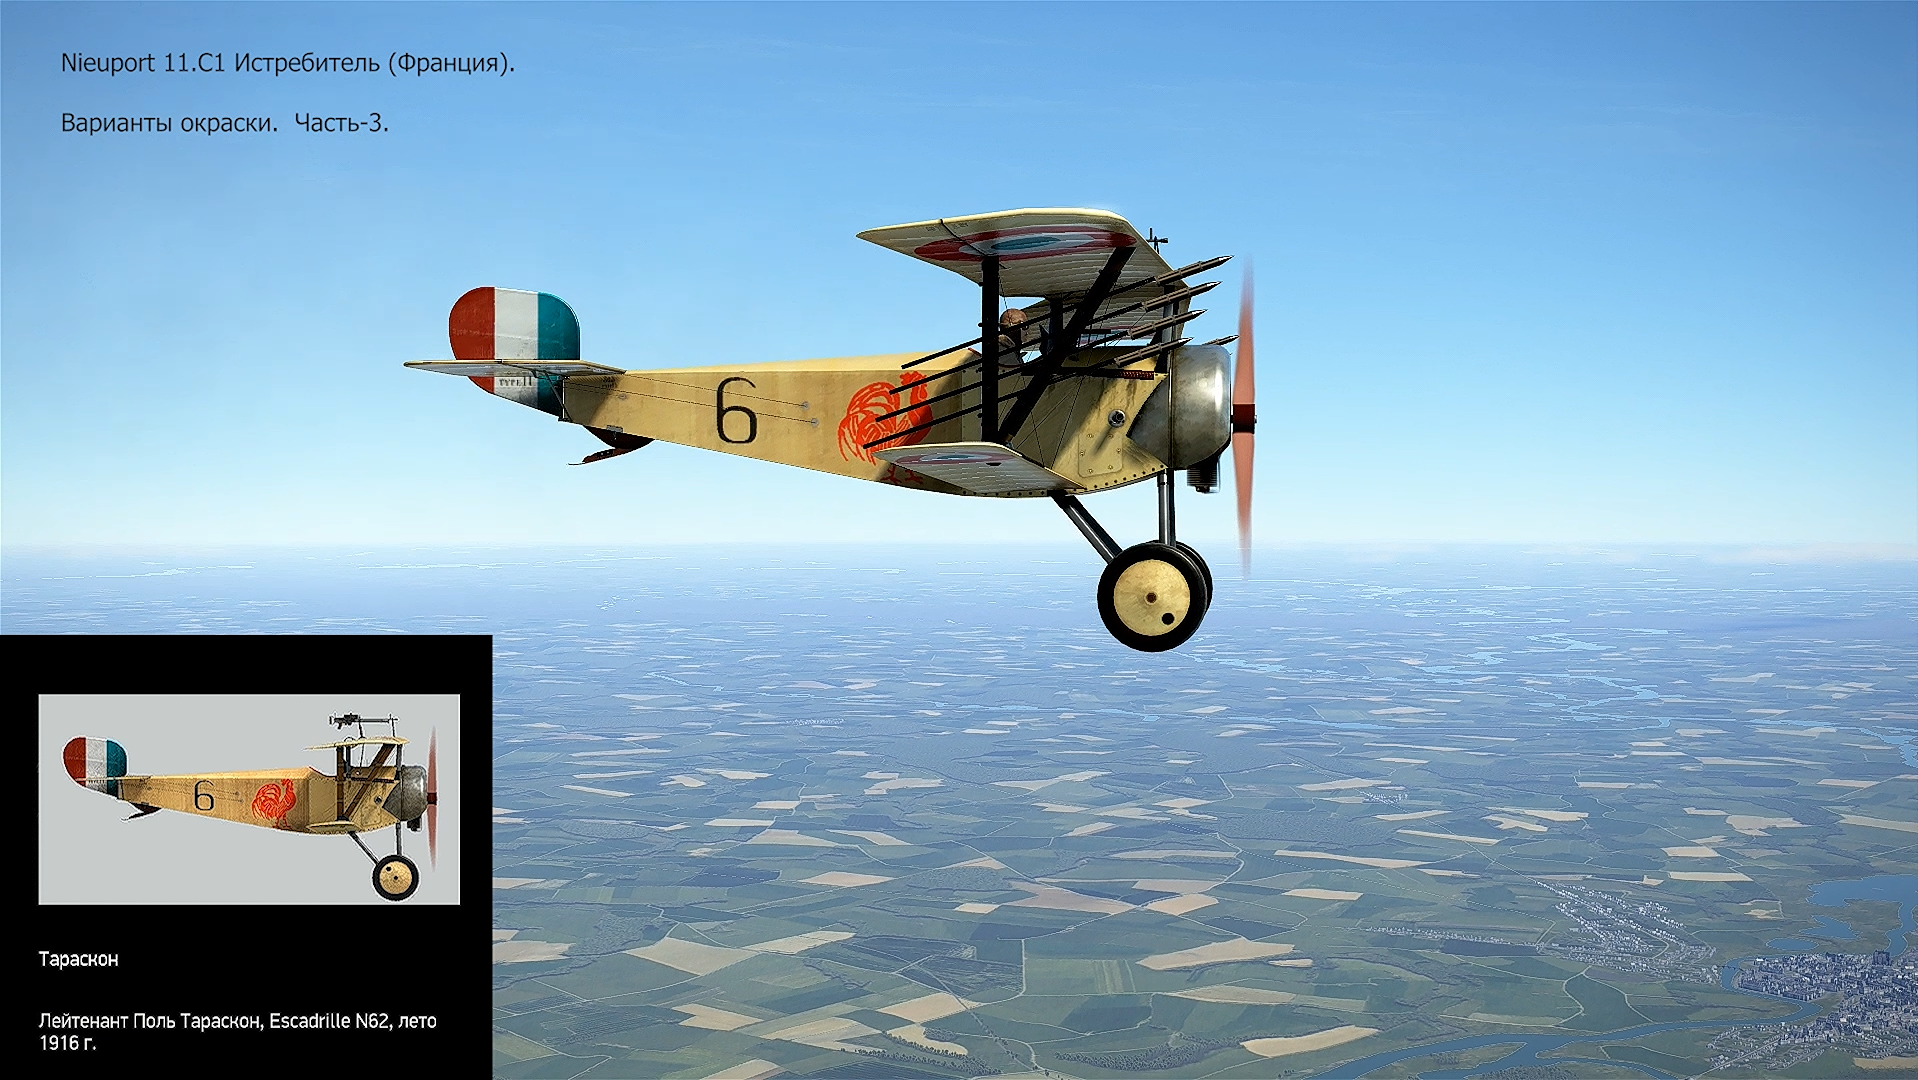 Nieuport 11.C1 Истребитель (Франция). Варианты окраски. Часть-3. Симулятор «Flying Circus – ll".